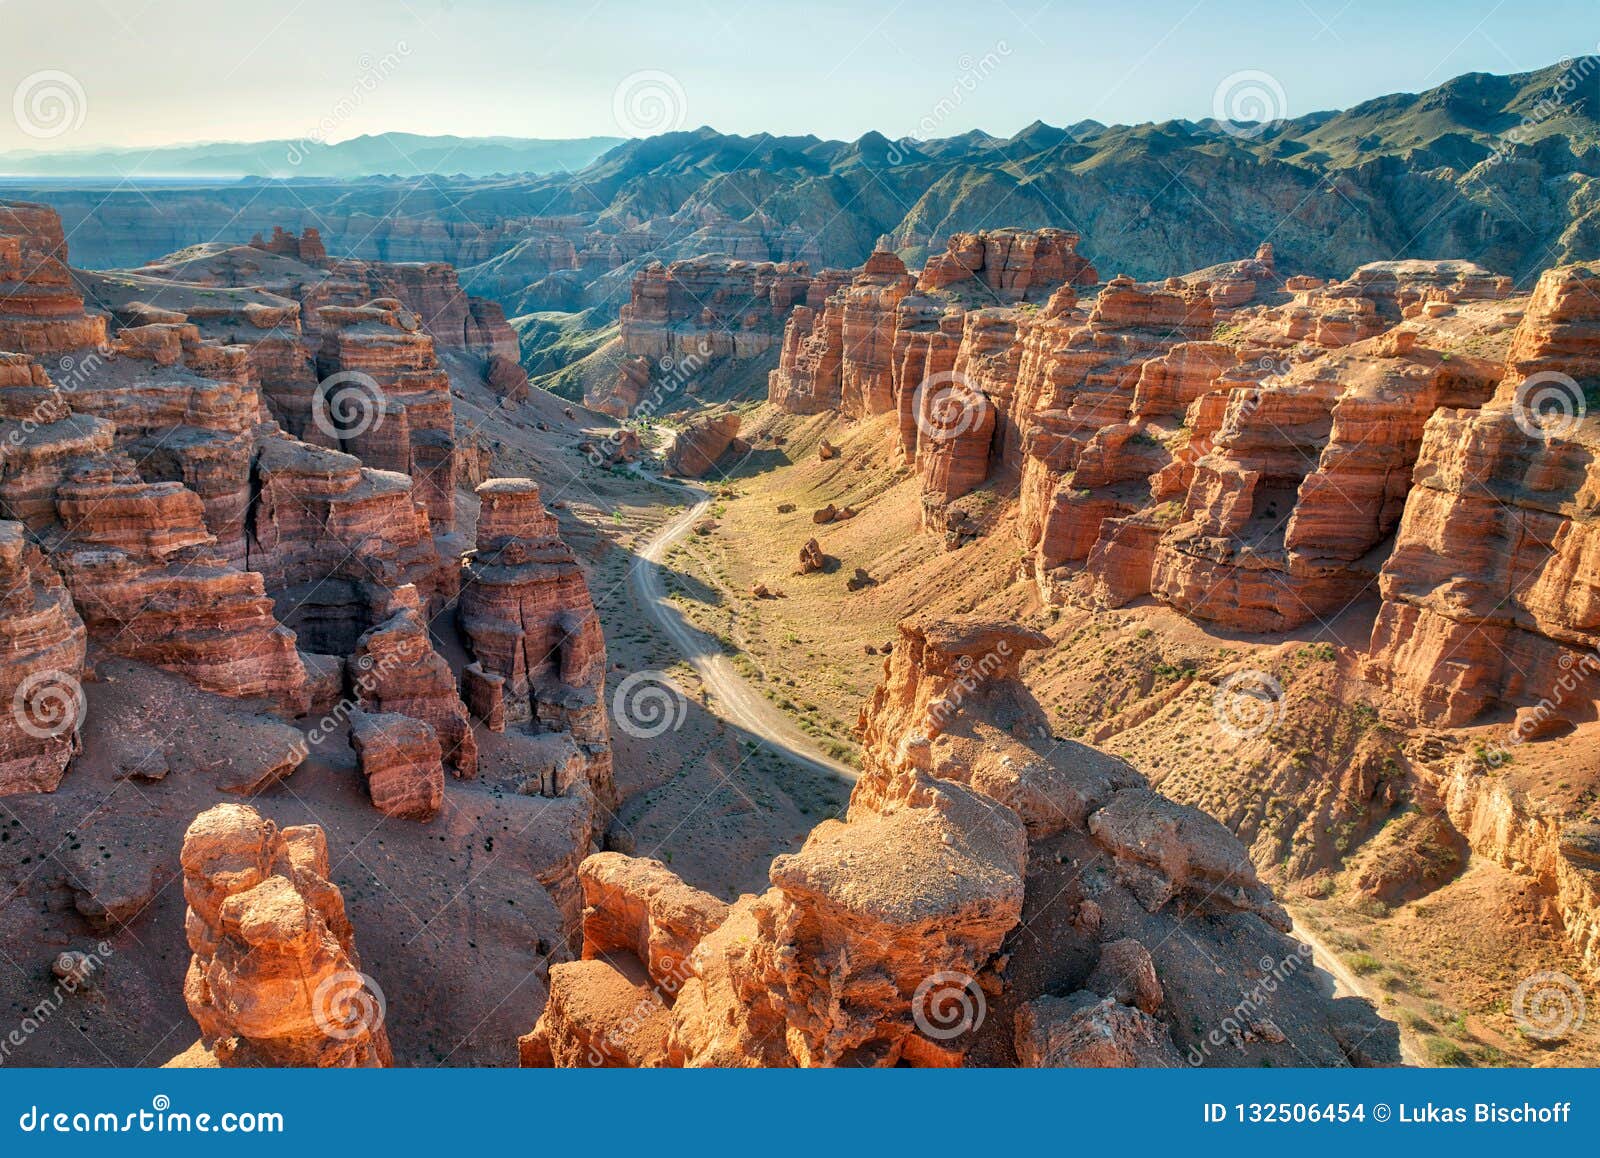 charyn canyon in south east kazakhstan, taken in august 2018 taken in hdr